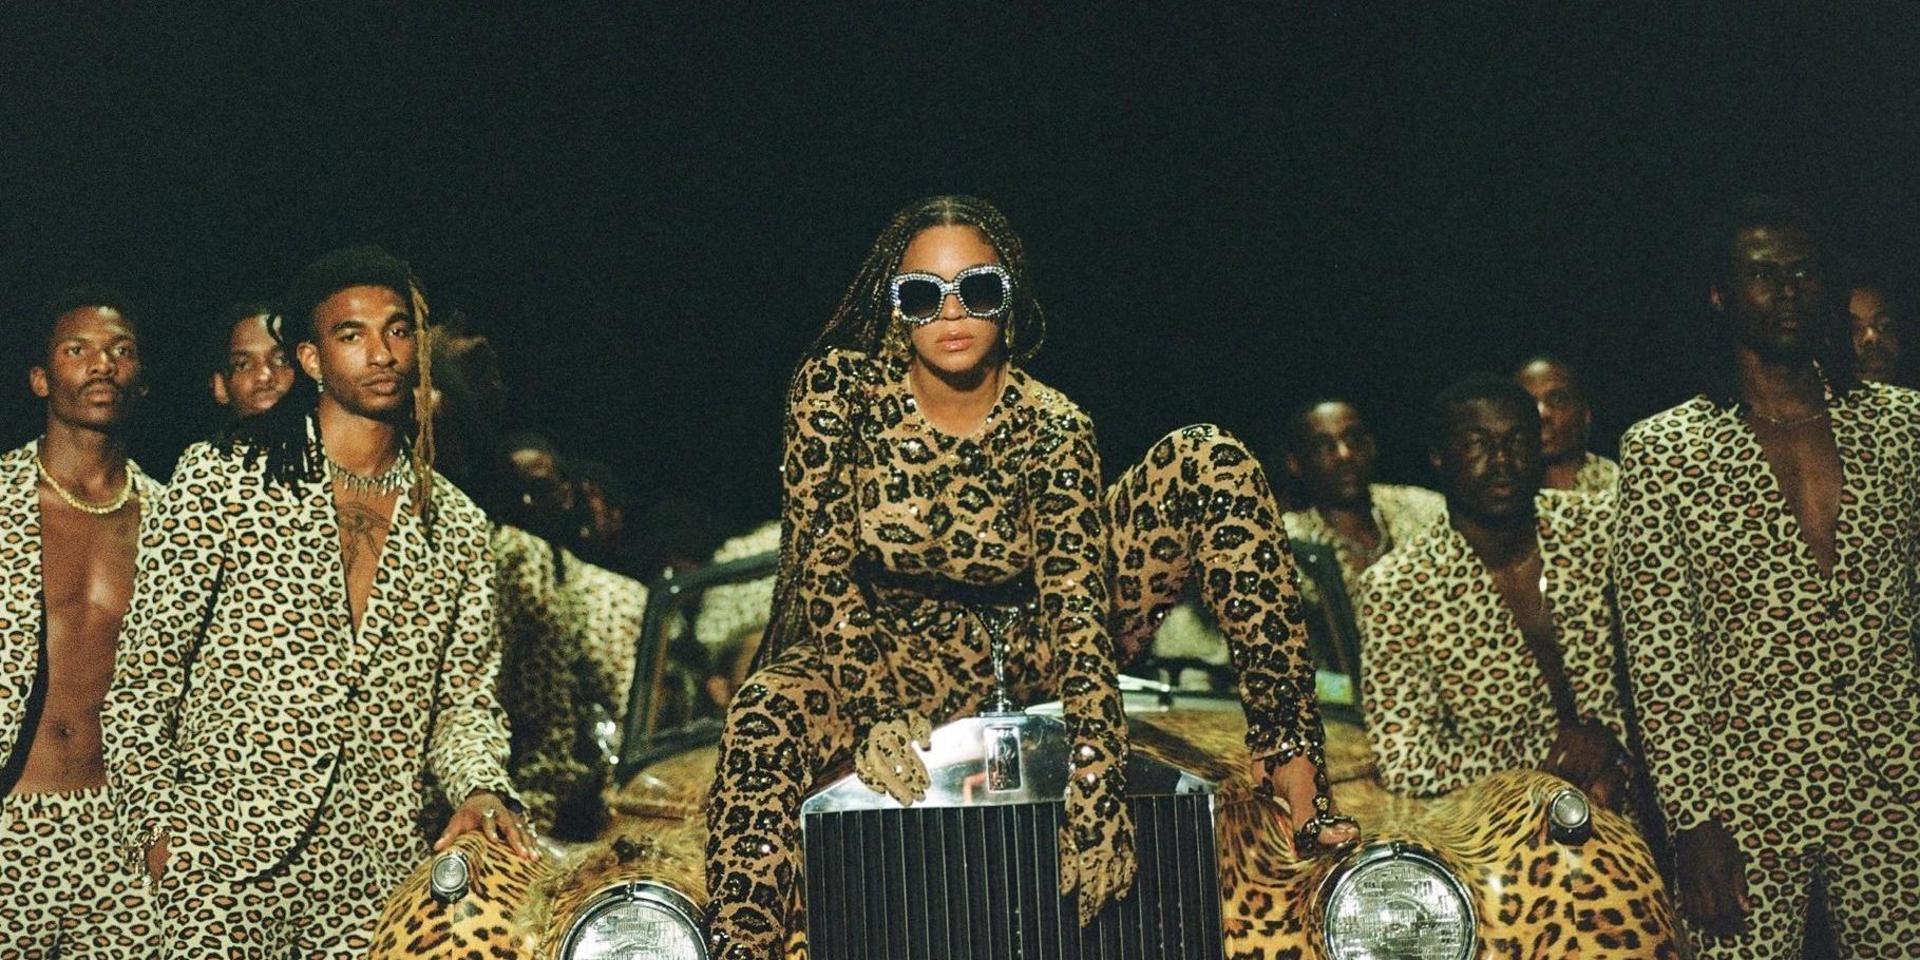 Beyoncé Knowles i en scen från det visuella albumet ”Black is king”.